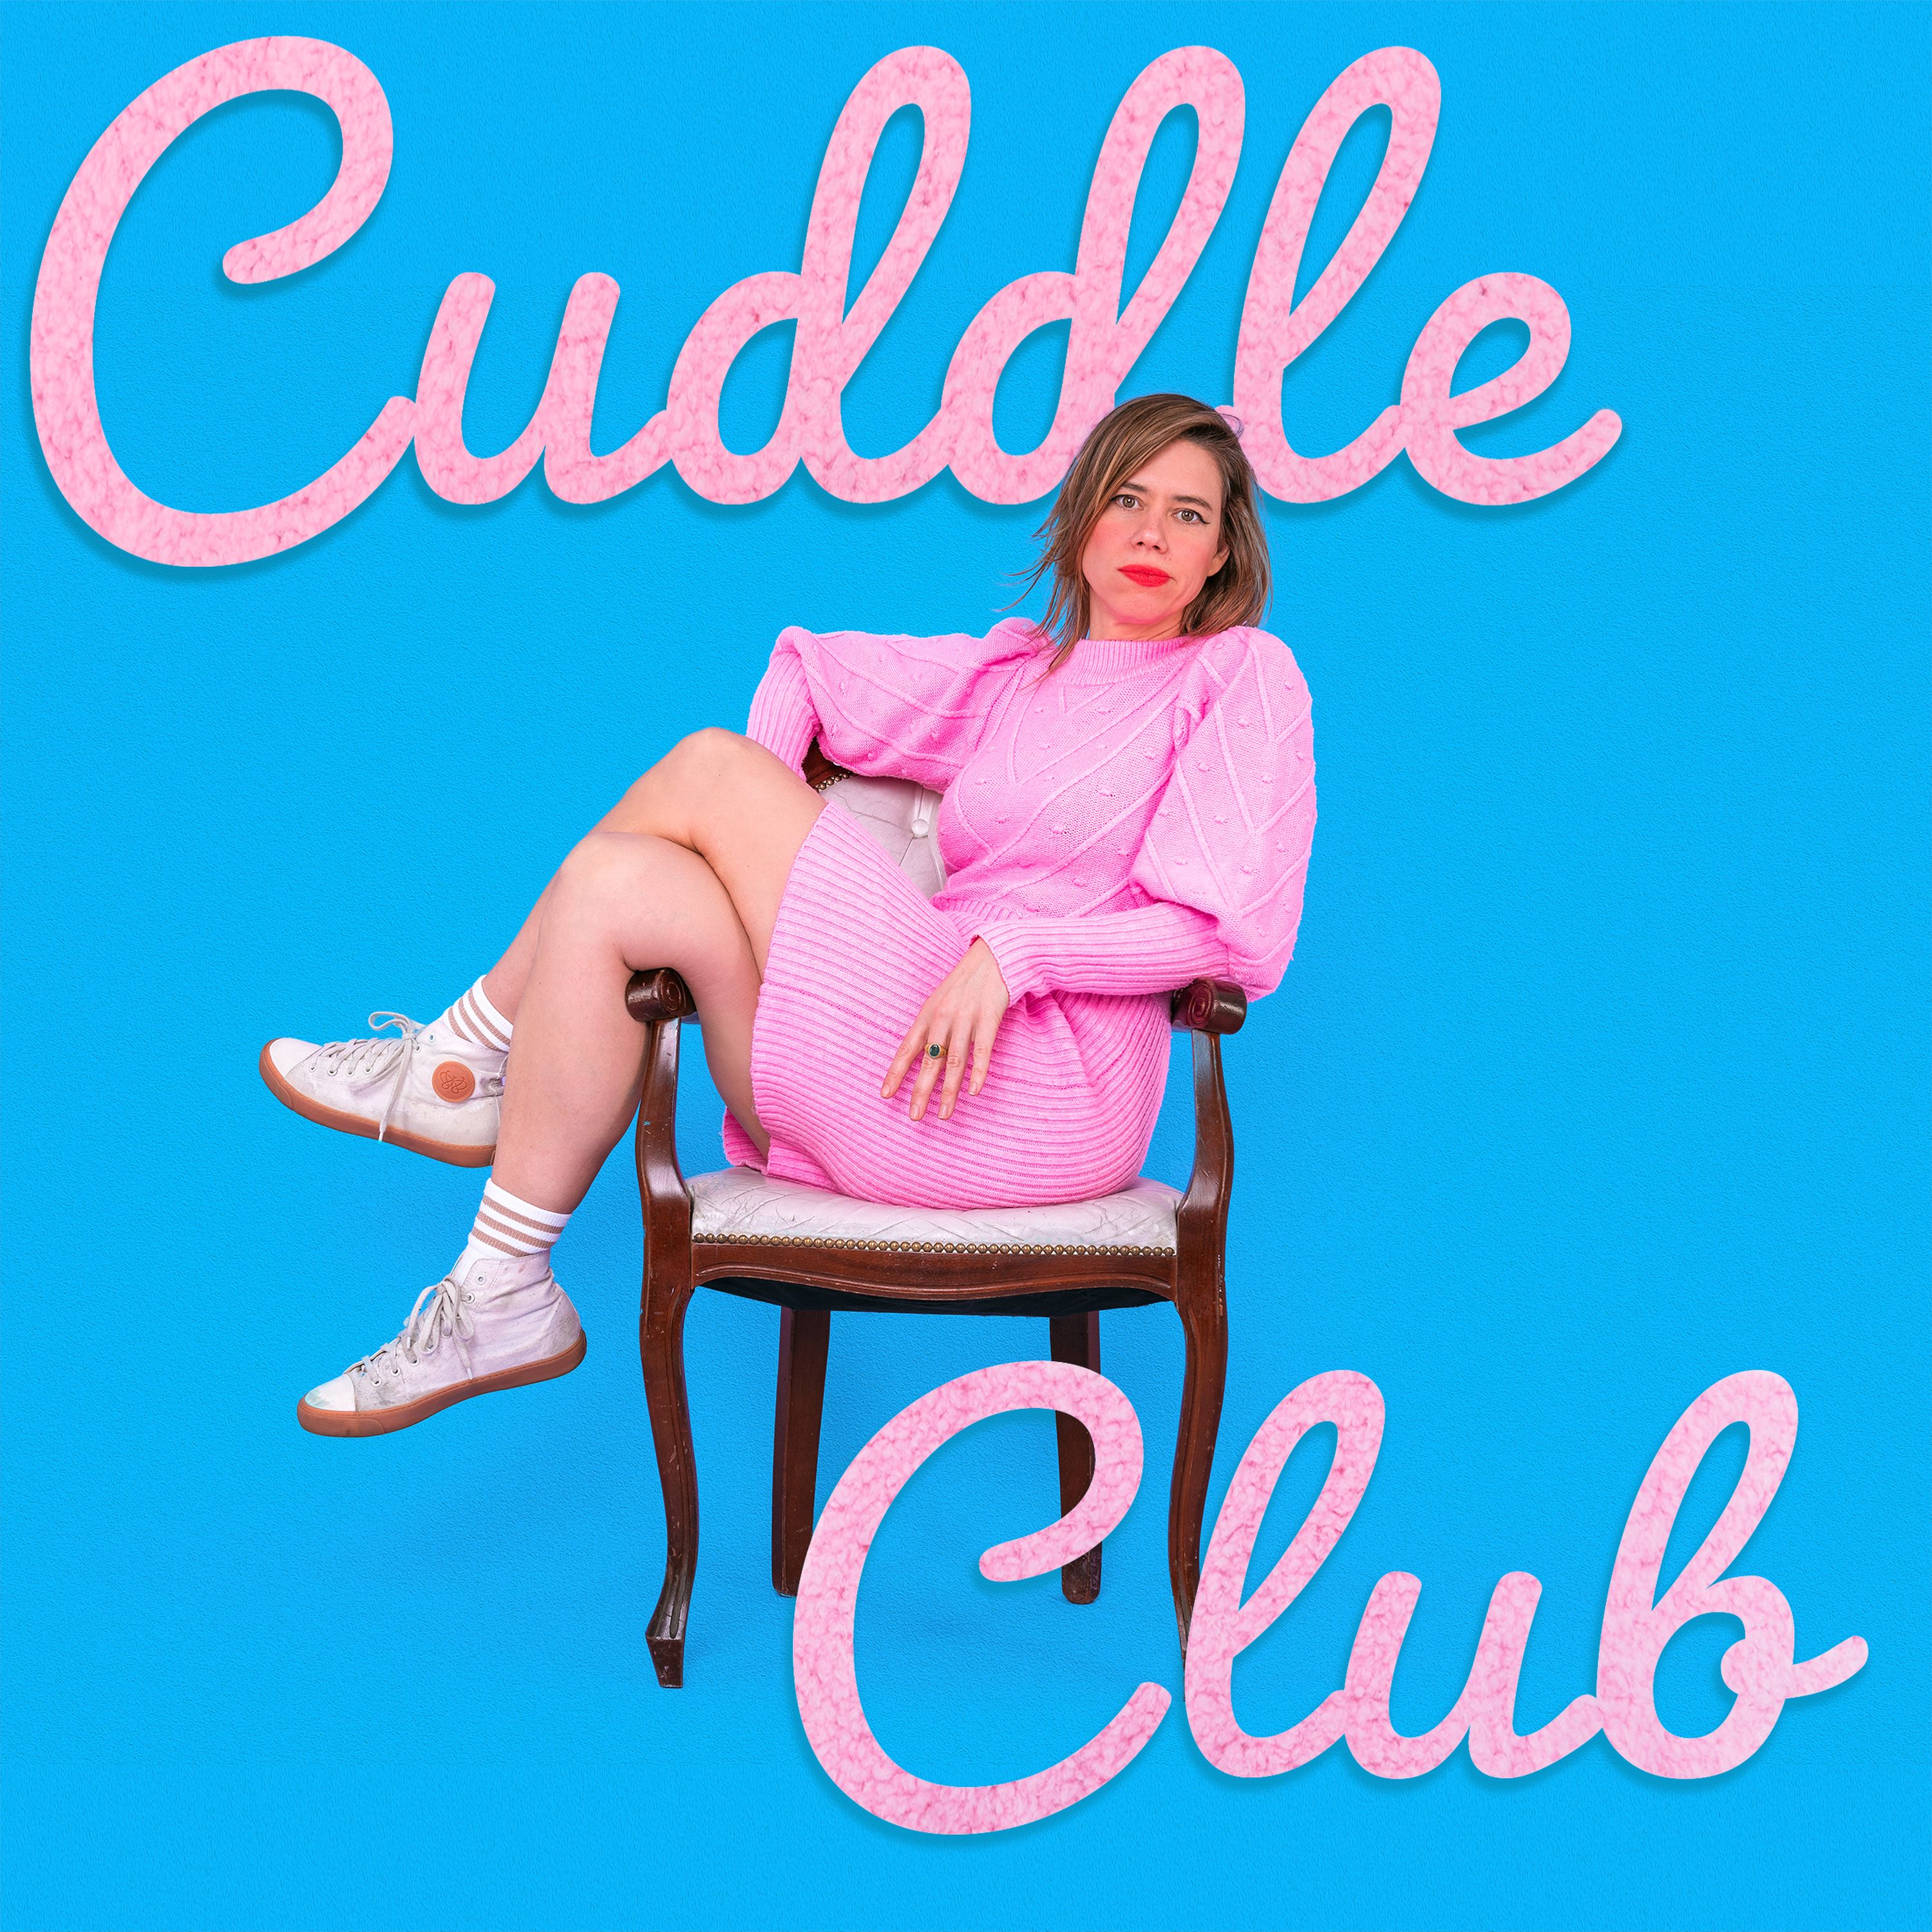 Cuddle Club - Trailer